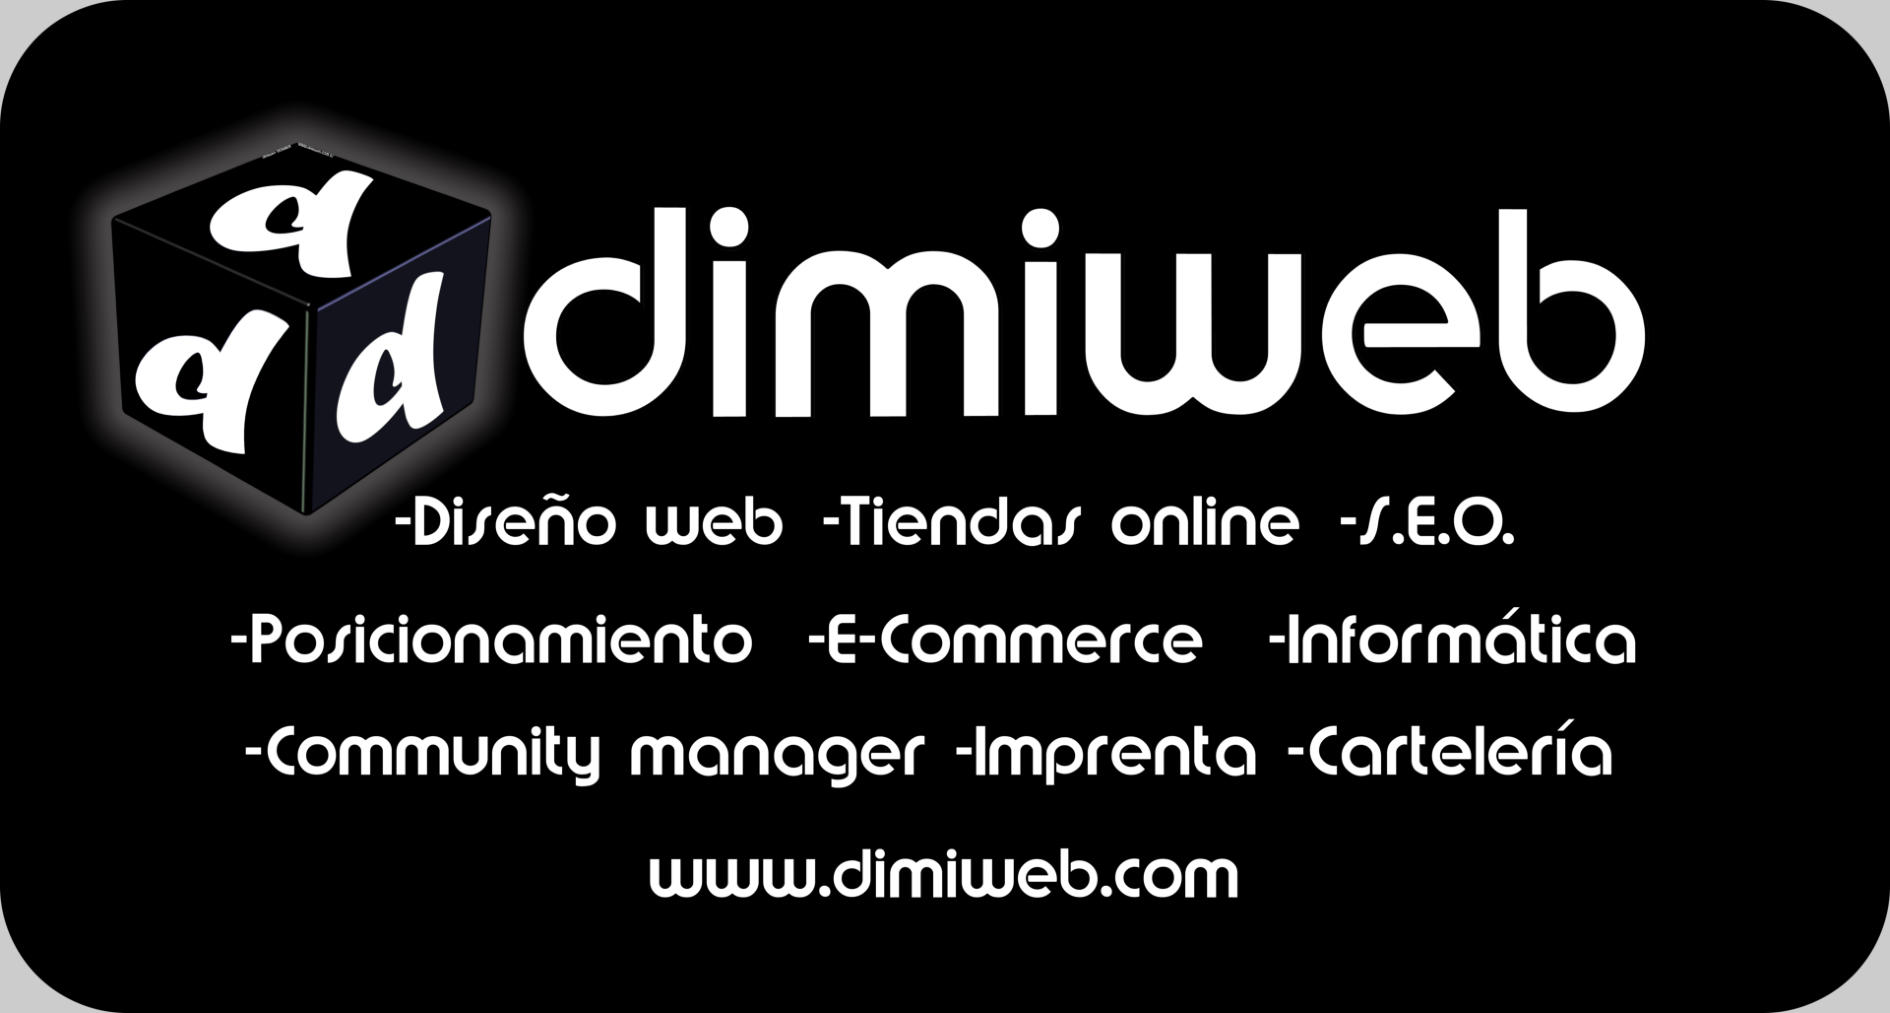 Dimiweb